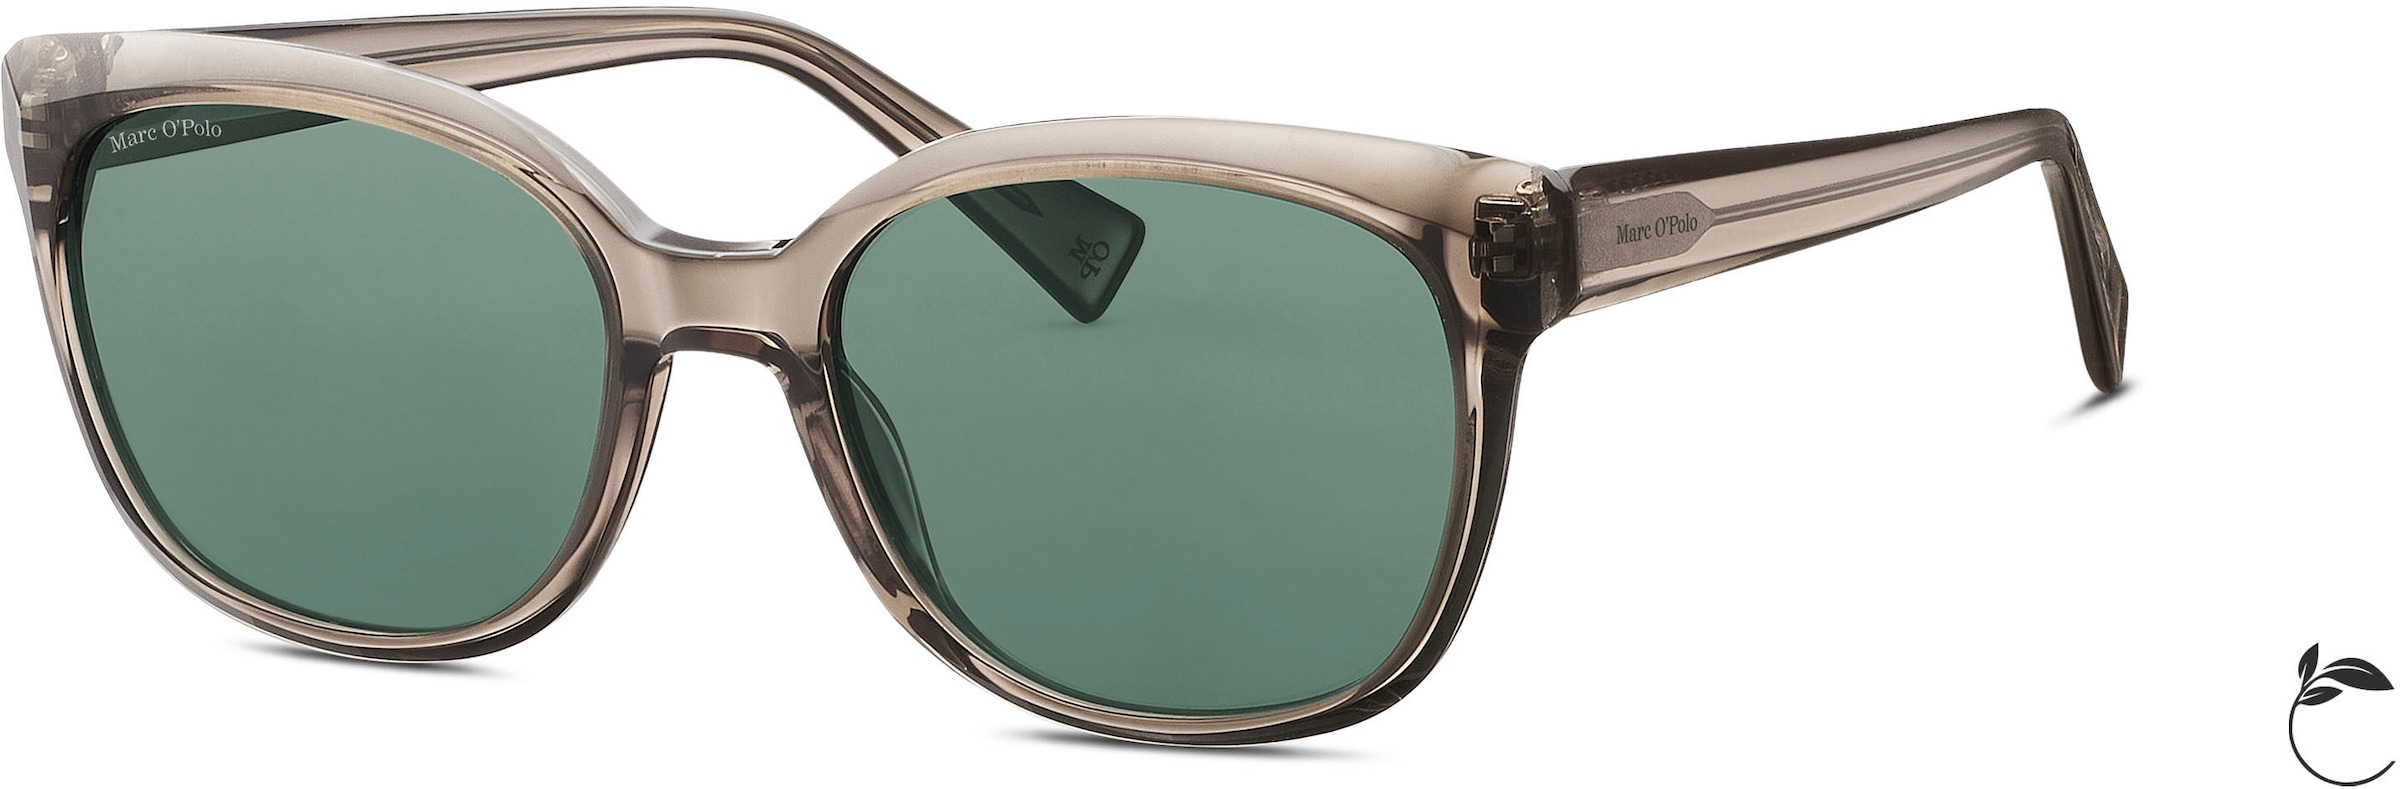 Sonnenbrille »Modell 506196«, Karree-Form